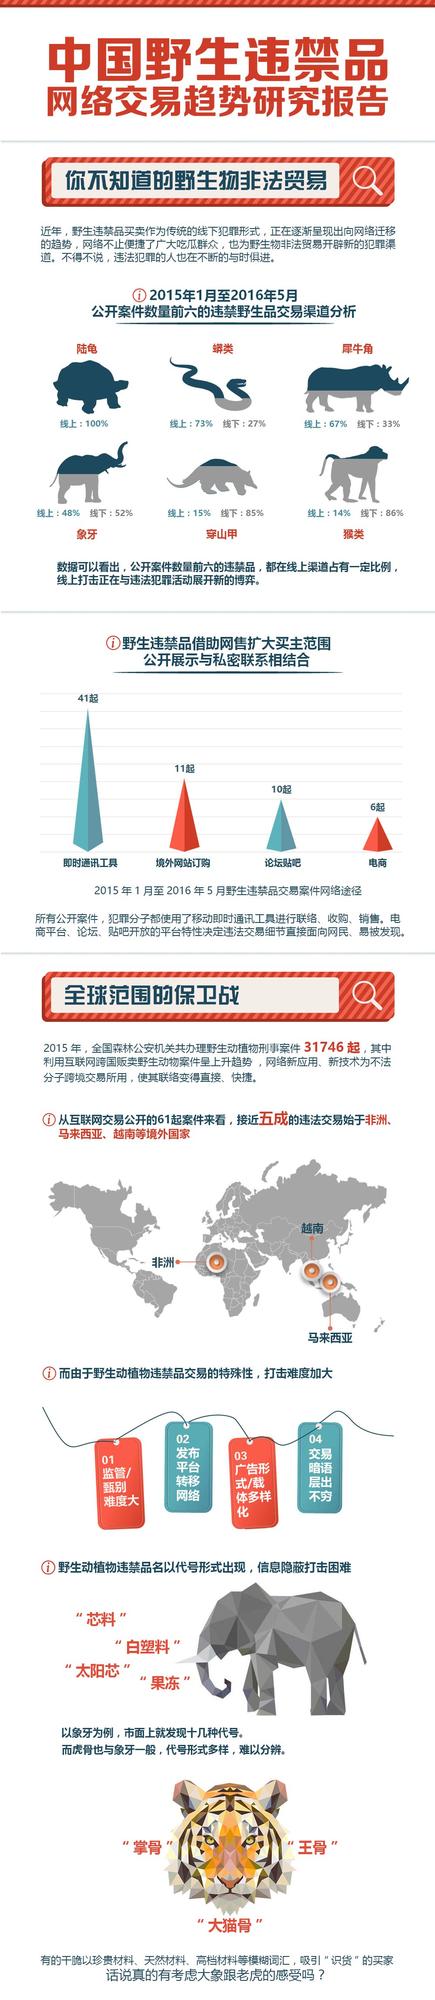 中国野生违禁品网络交易研究趋势报告